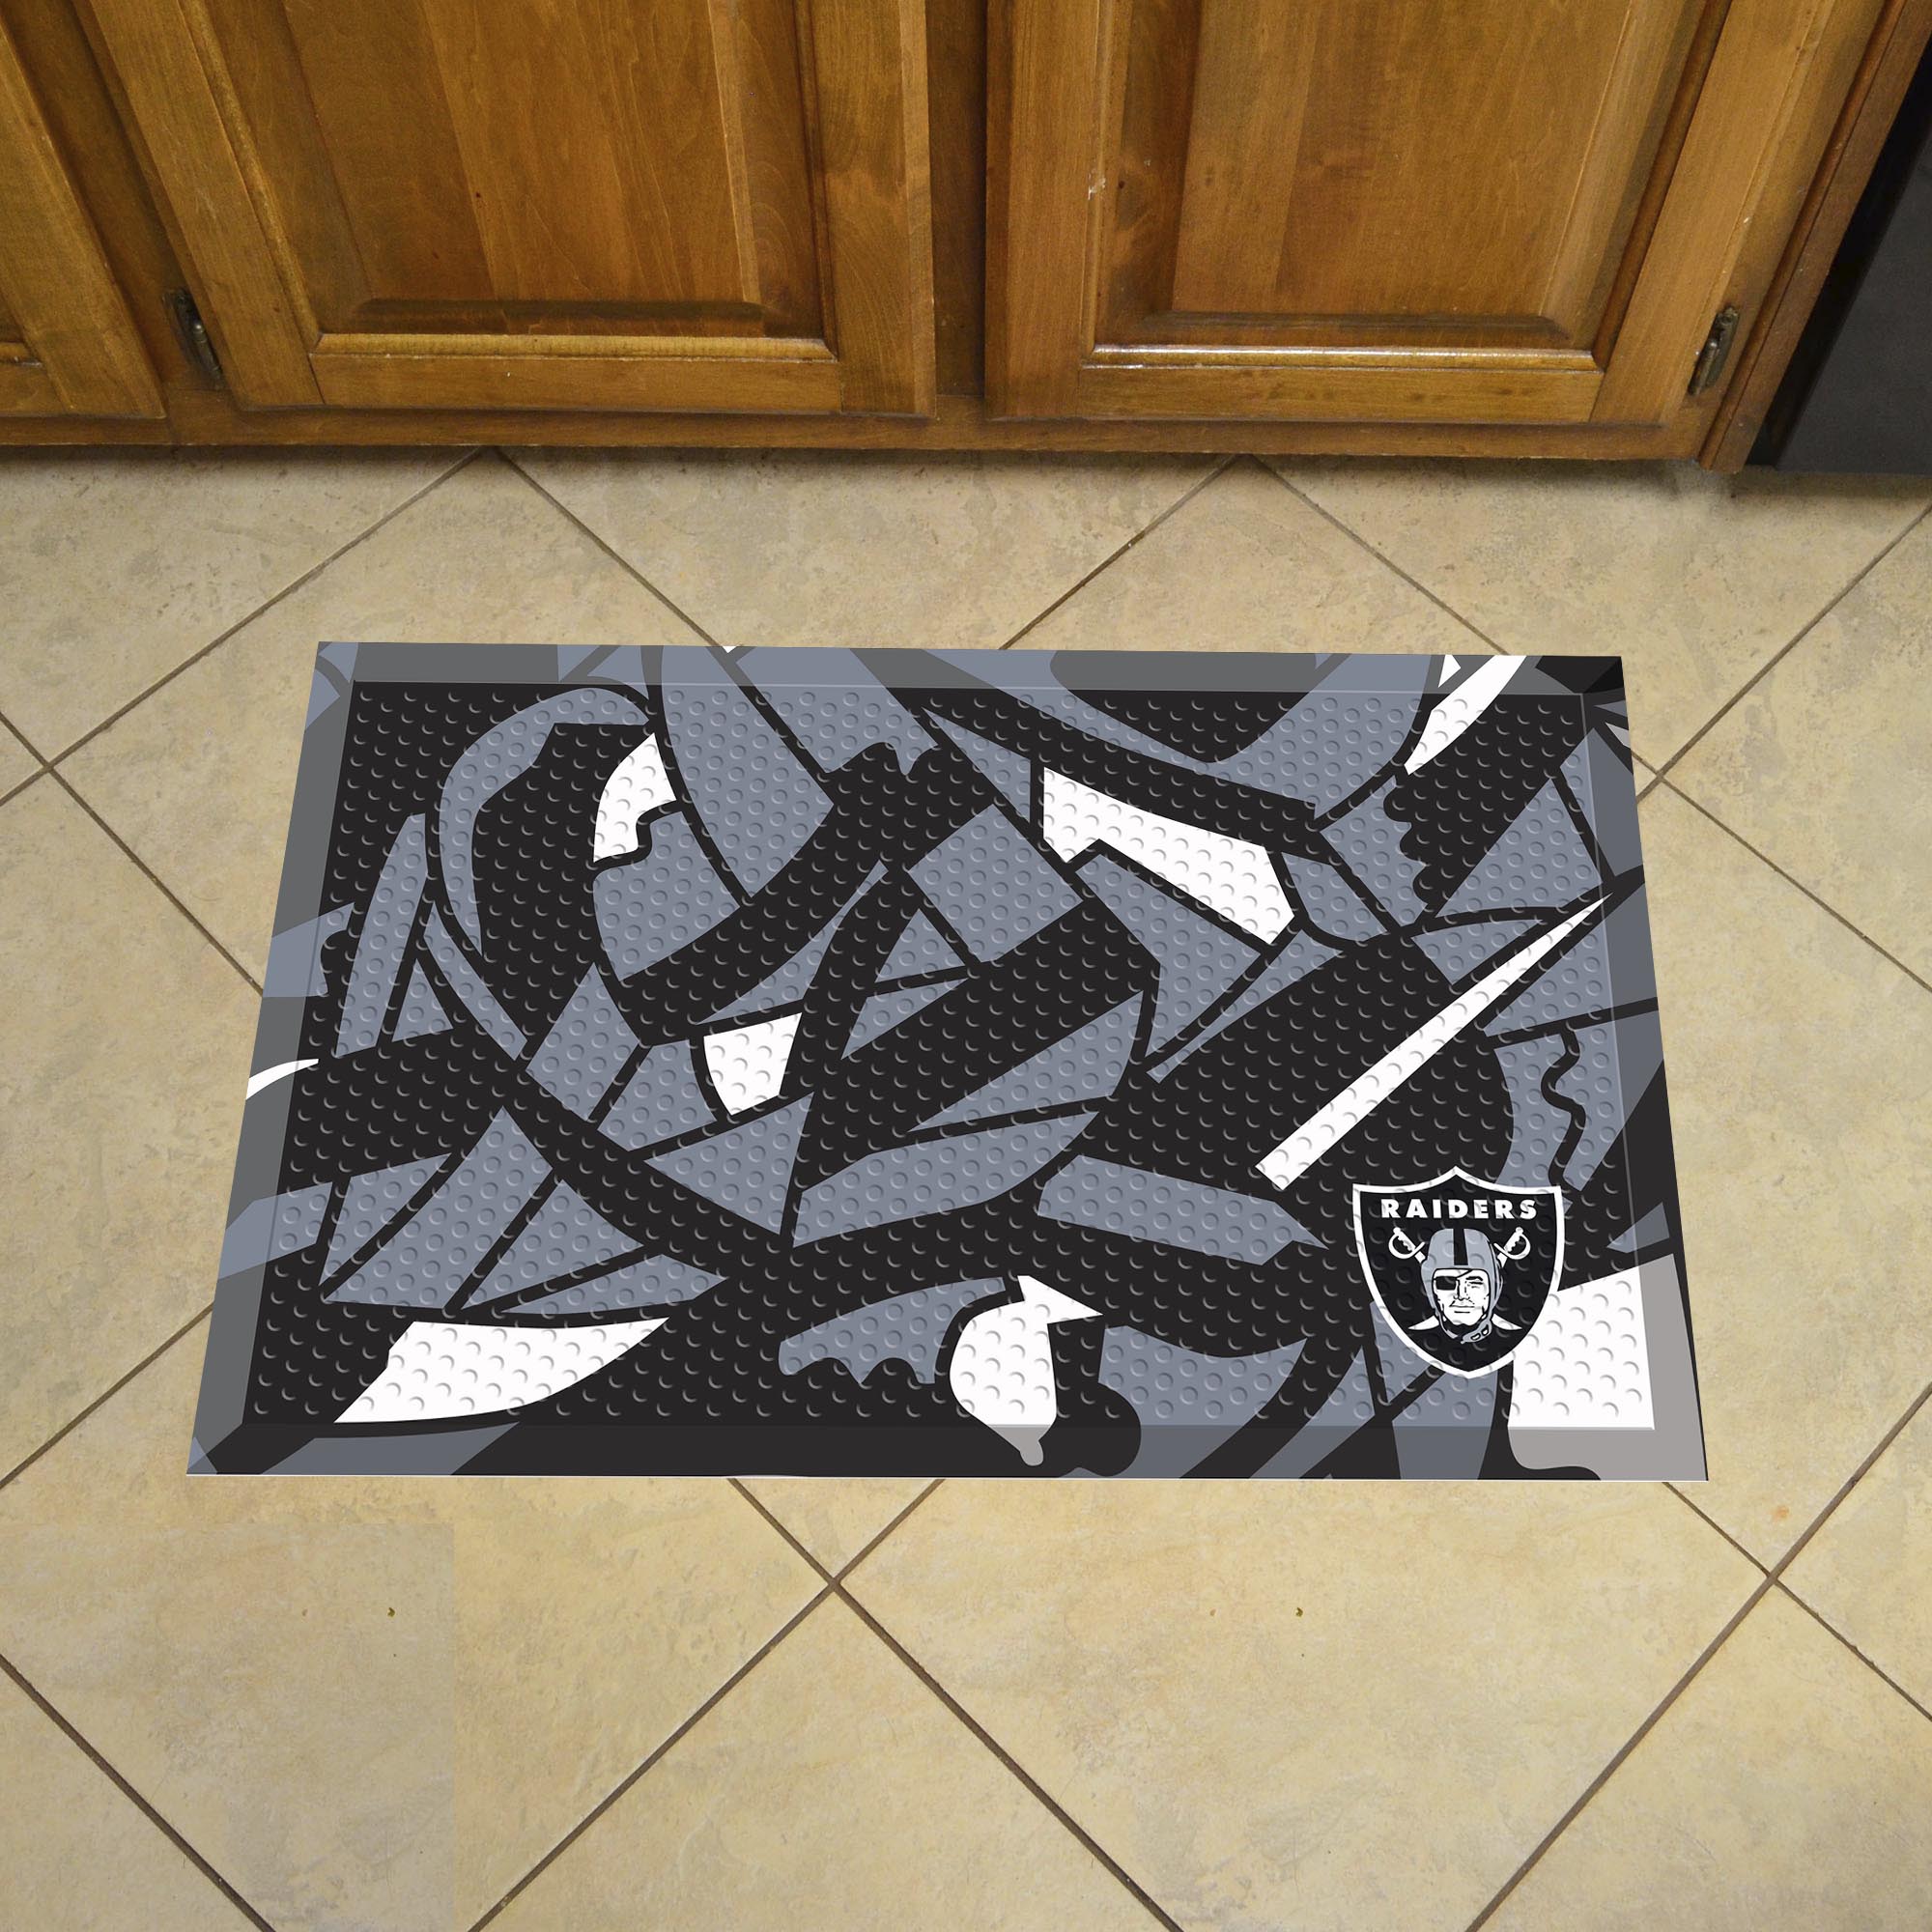 Oakland Raiders Quick Snap Scrapper Doormat - 19 x 30 rubber